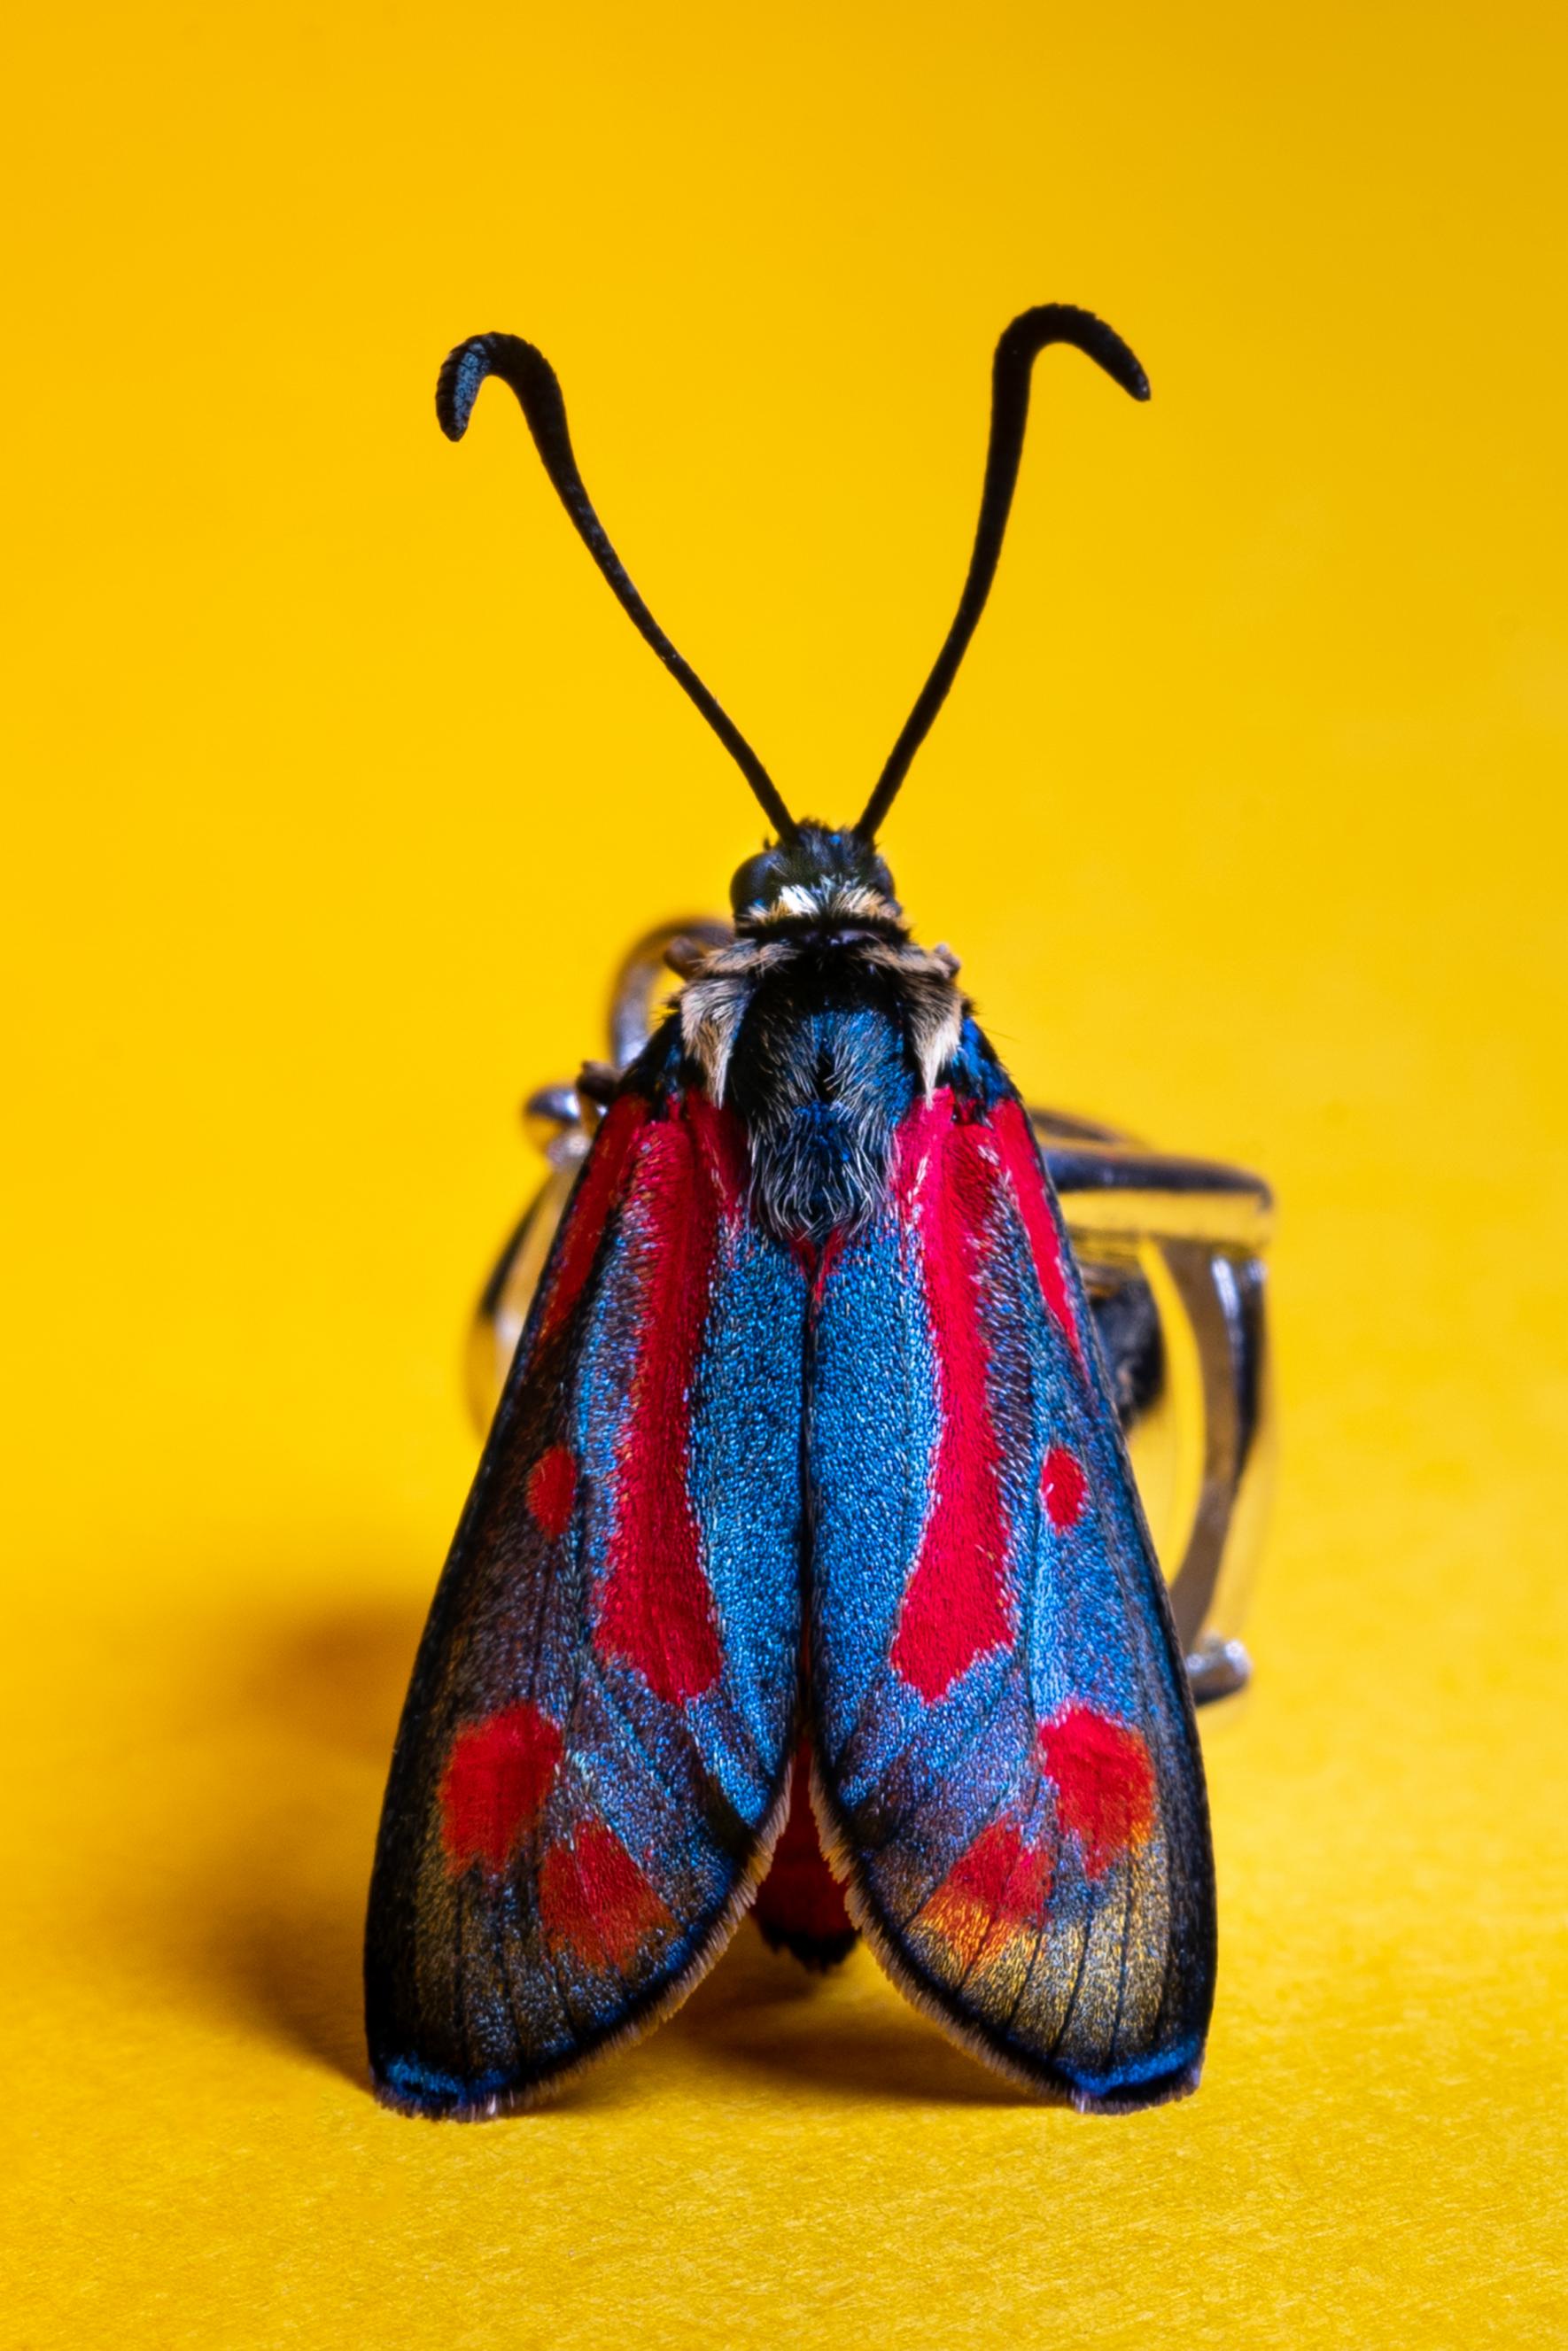 Ο Αμίν Μεθιάν, από την Ισπανία, με αυτή την φανταχτερή πεταλούδα είναι υποψήφιος στην κατηγορία «Αγρια Ζωή και Φύση»